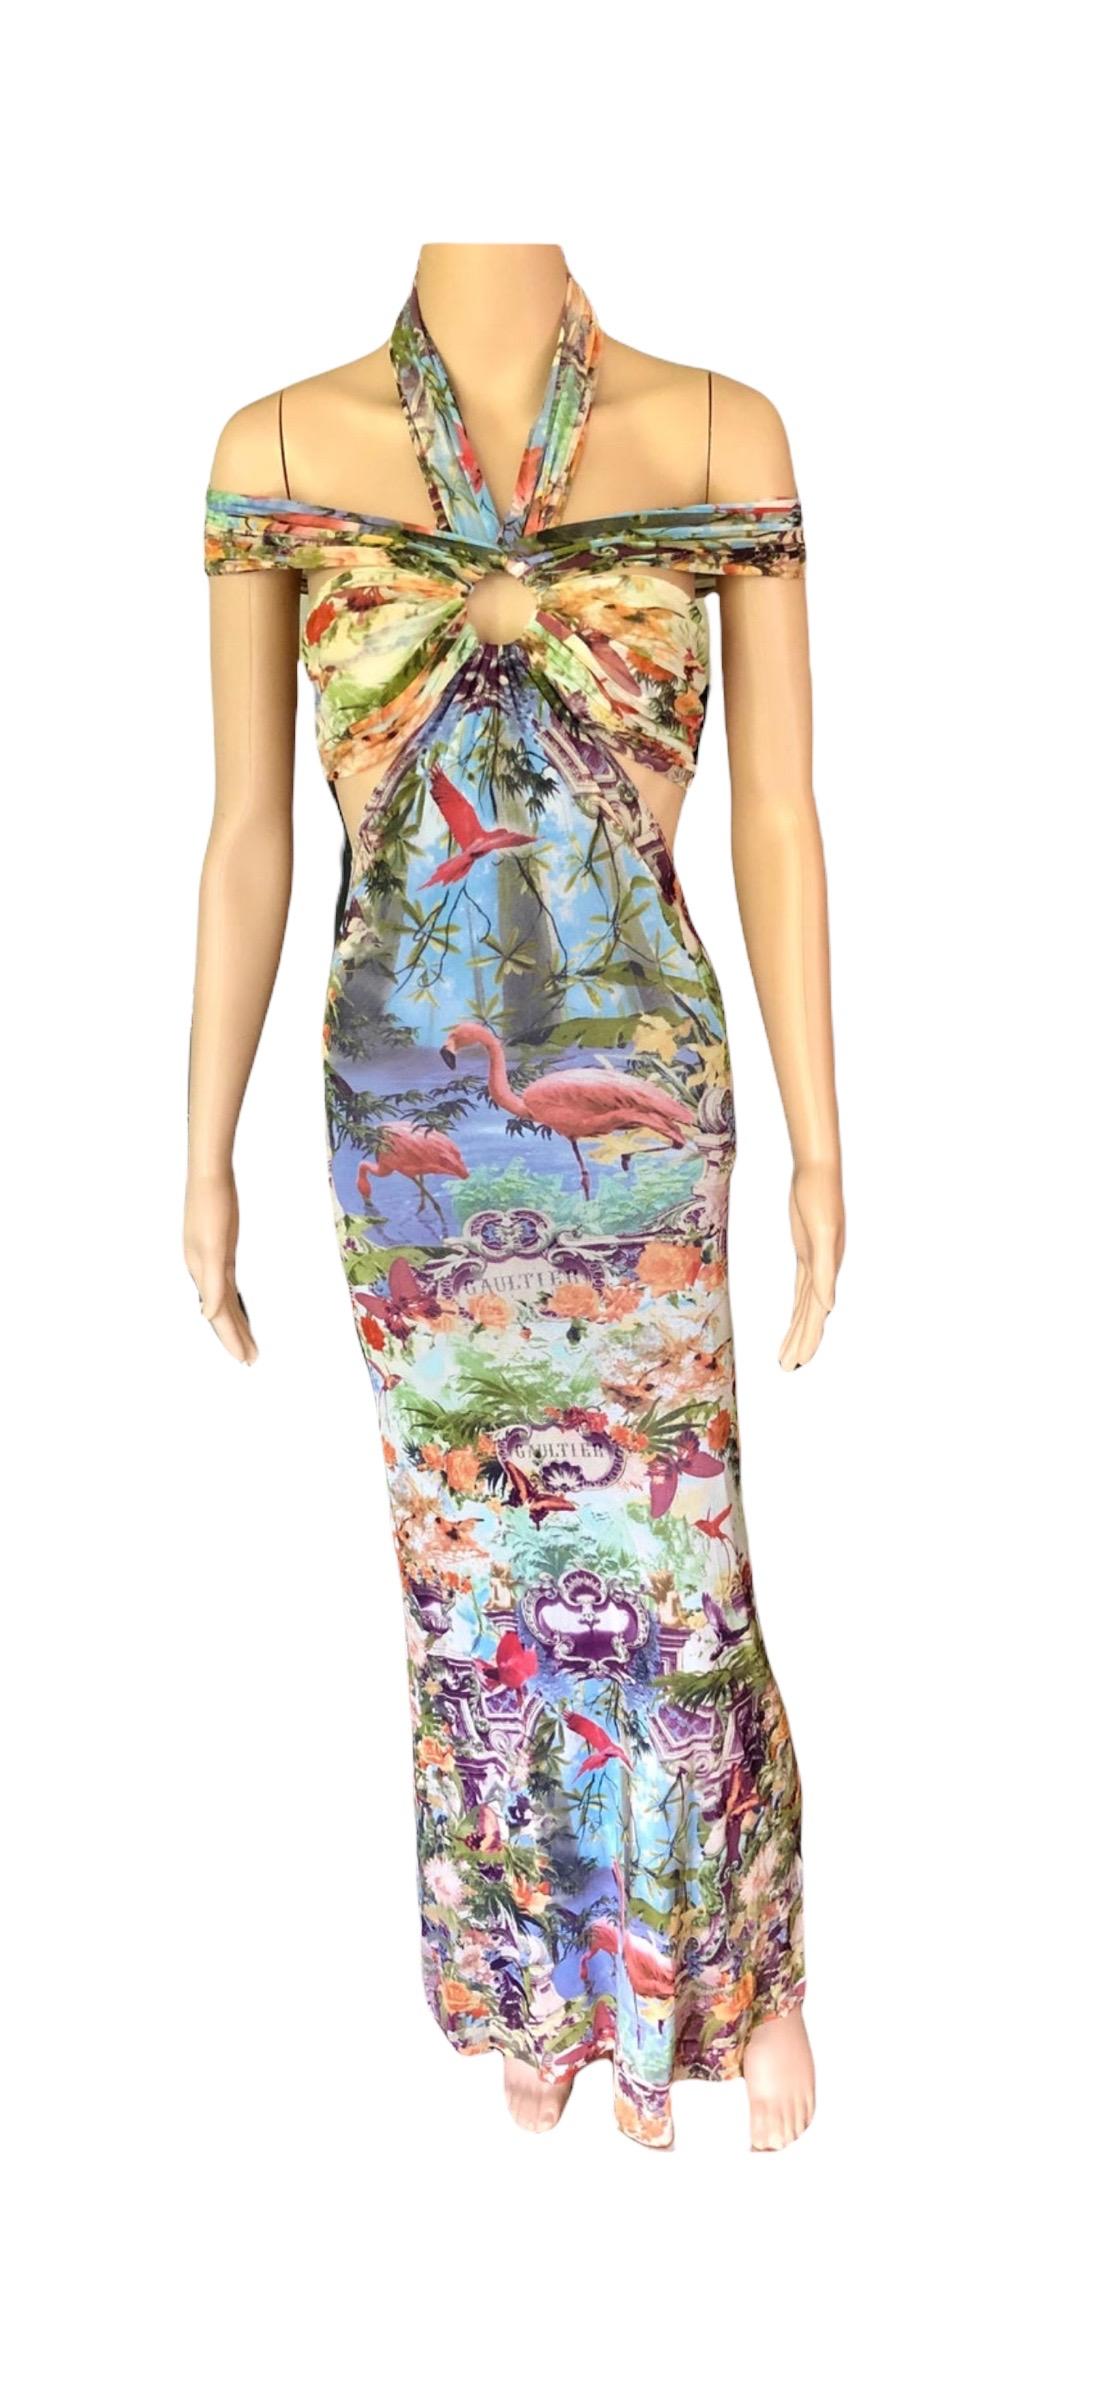 Jean Paul Gaultier Soleil S/S1999 Flamingo Tropical Print Cutout Mesh Maxi Dress For Sale 15